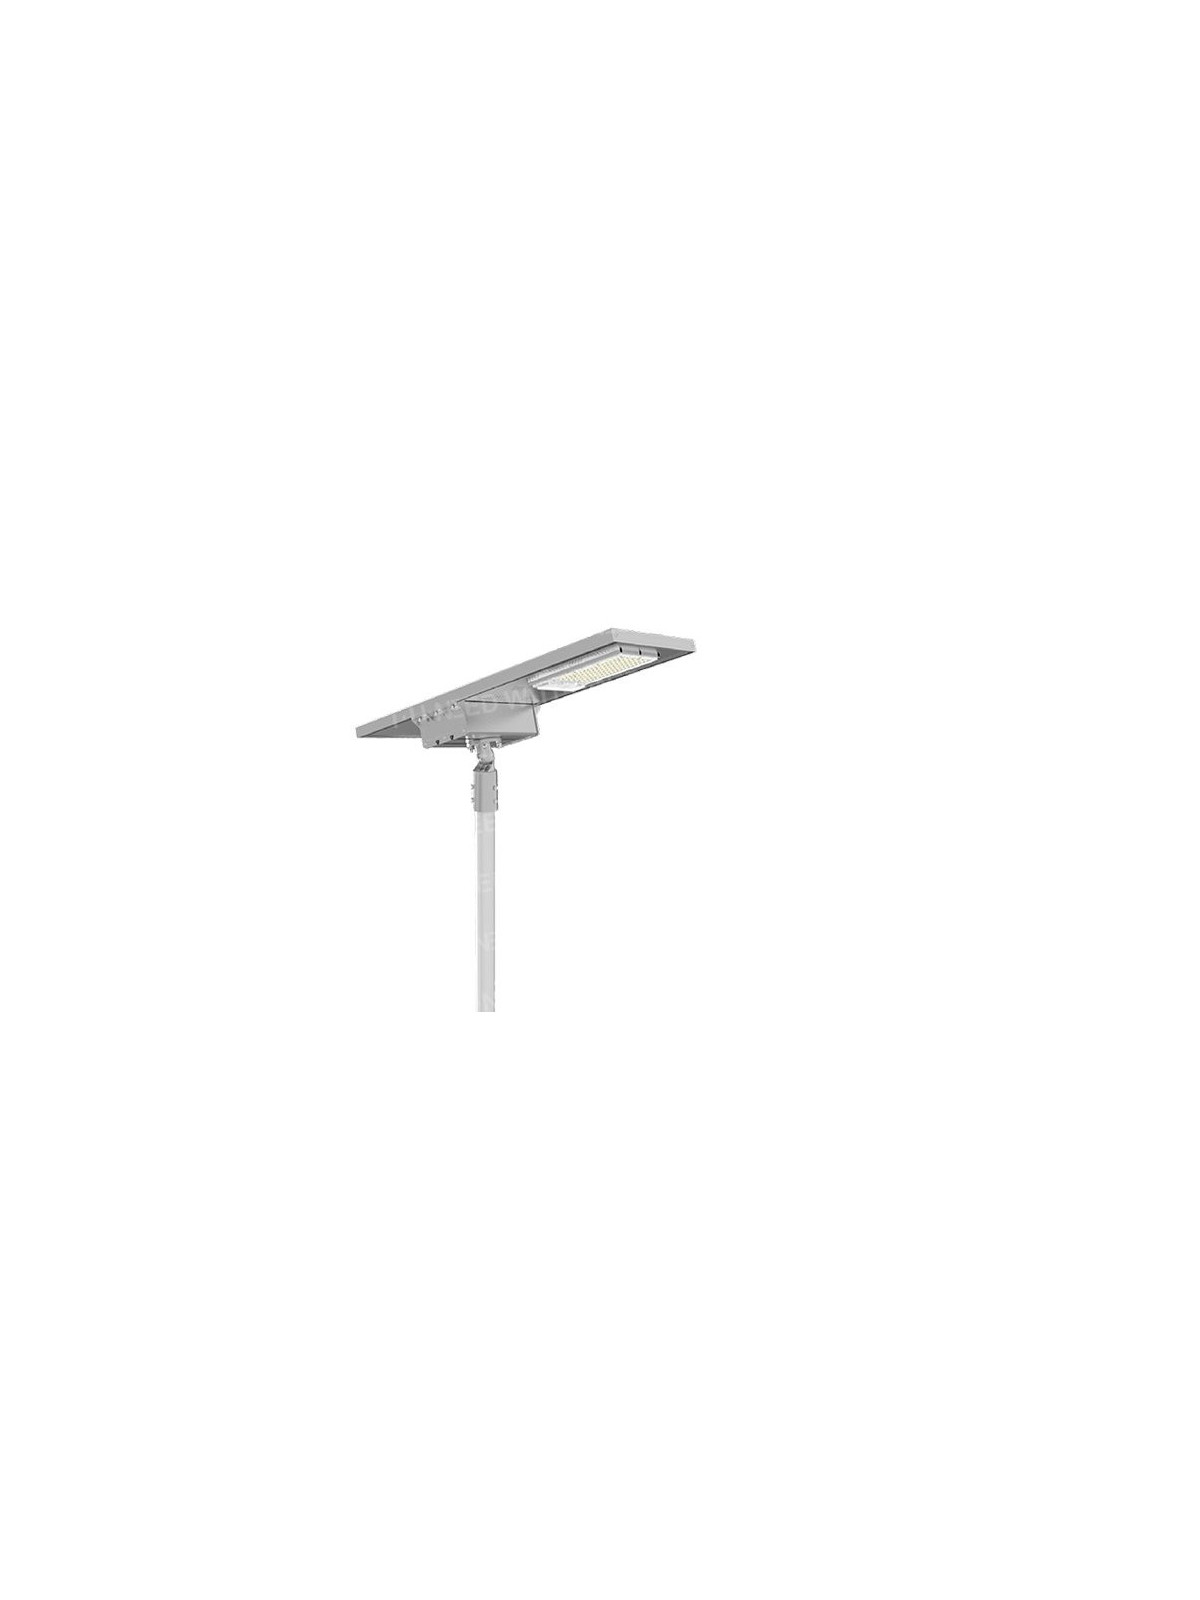 Solar floor lamp - ShootingStar standalone LED